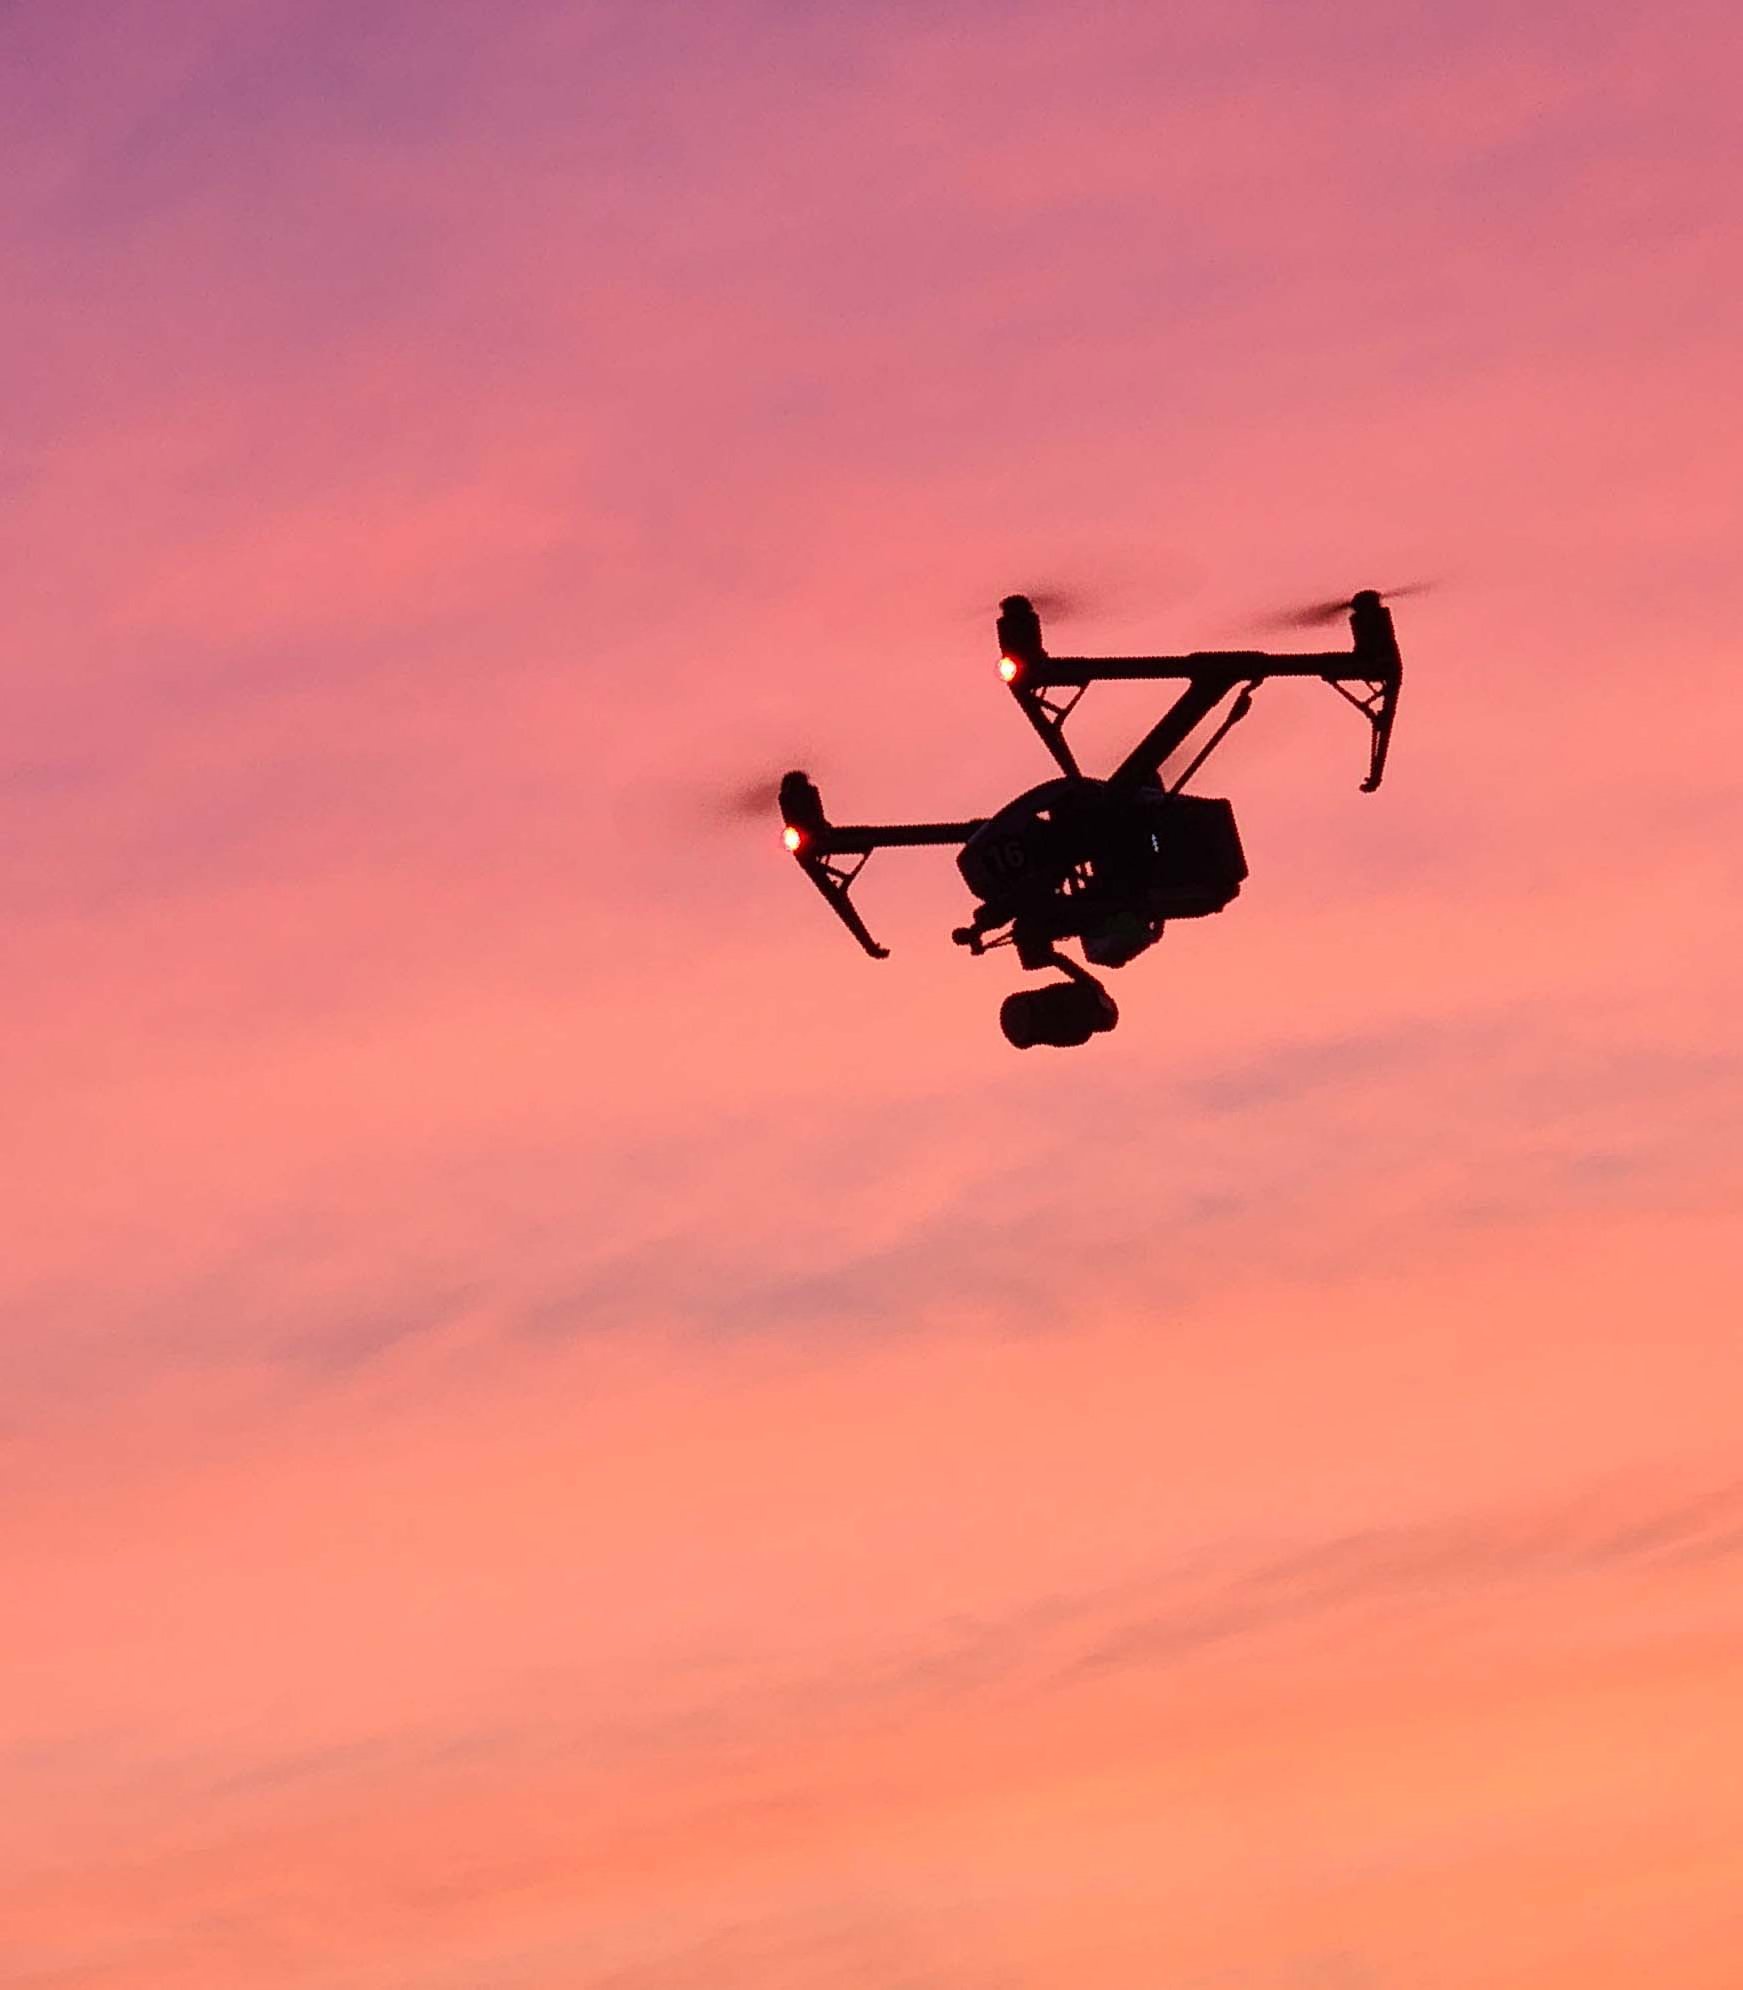 Drone planeando contra el cielo al atardecer, capturando vistas aéreas.